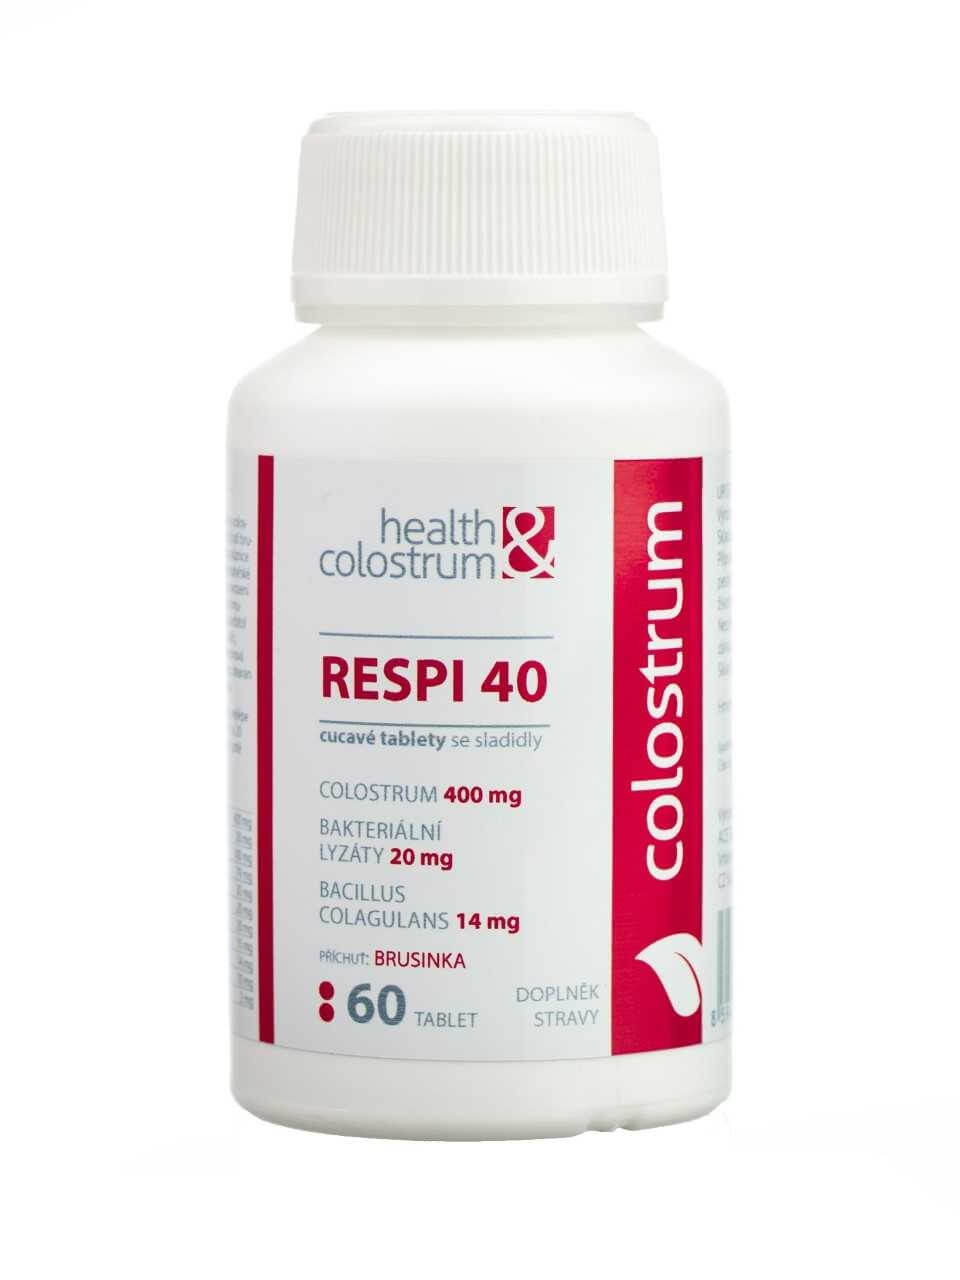 Zobrazit detail výrobku Health&colostrum RESPI 40 (400 mg) + bakteriální lyzáty - příchuť brusinka 60 cucavých tbl. + 2 měsíce na vrácení zboží